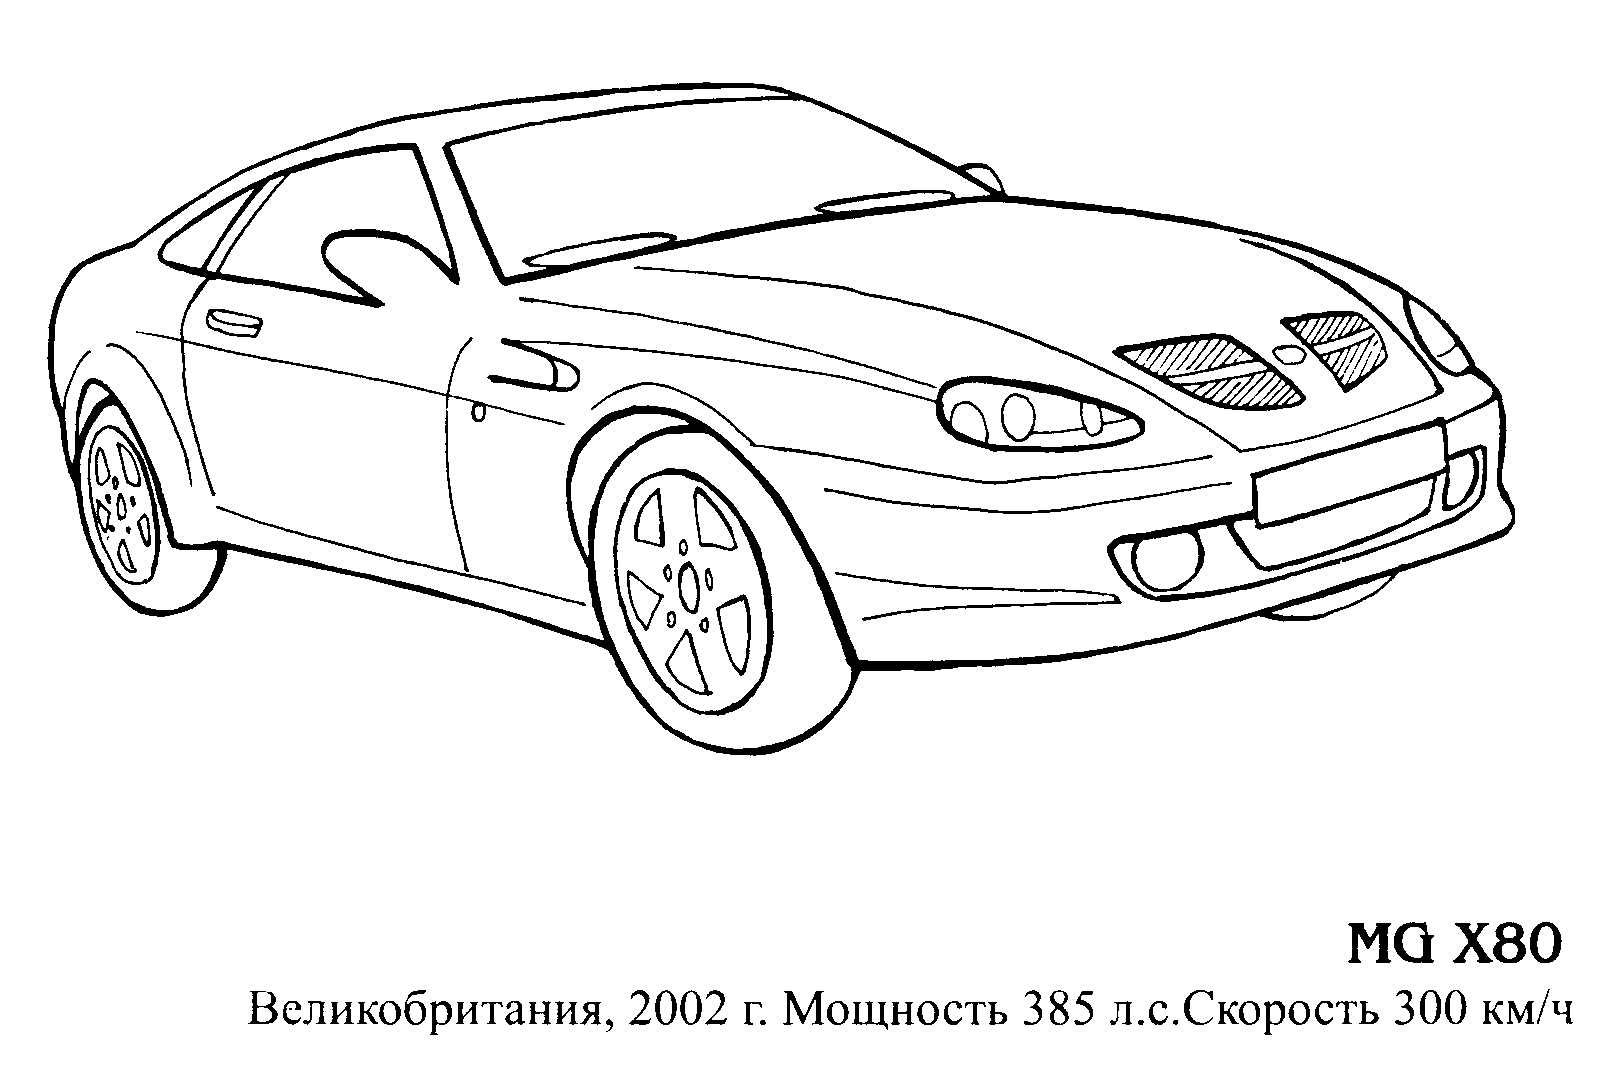 Спорткар MG X80